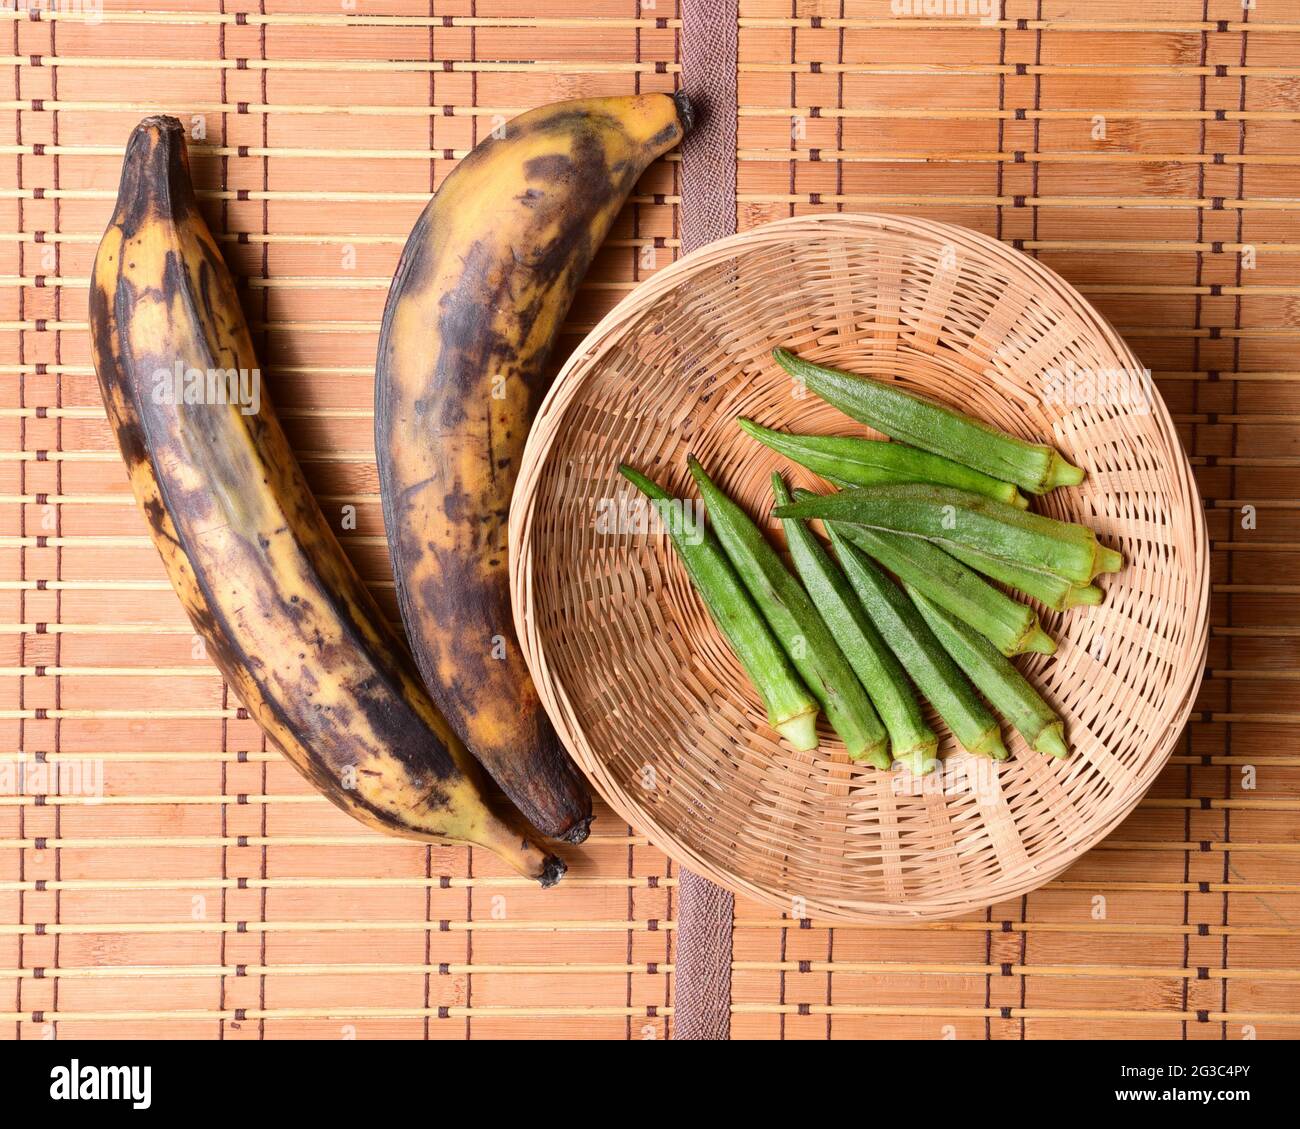 hortalizas tropicales okra y plátano maduro en una alfombra de bambú Foto de stock